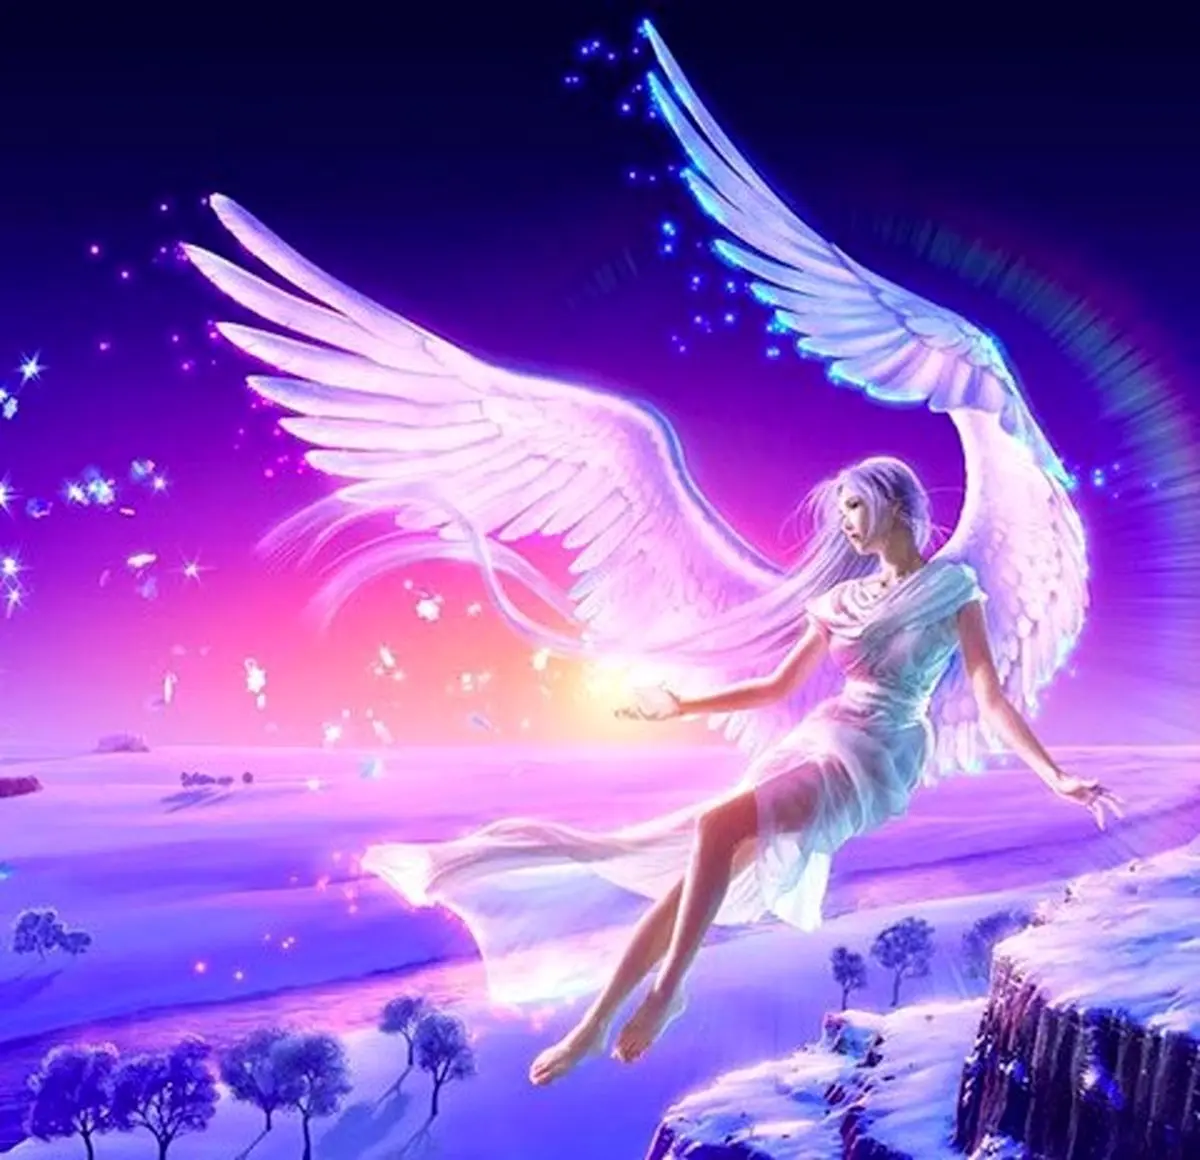 فال فرشتگان 26 شهریورماه  | فرشتگان برای شما چه پیام مثبتی دارند؟